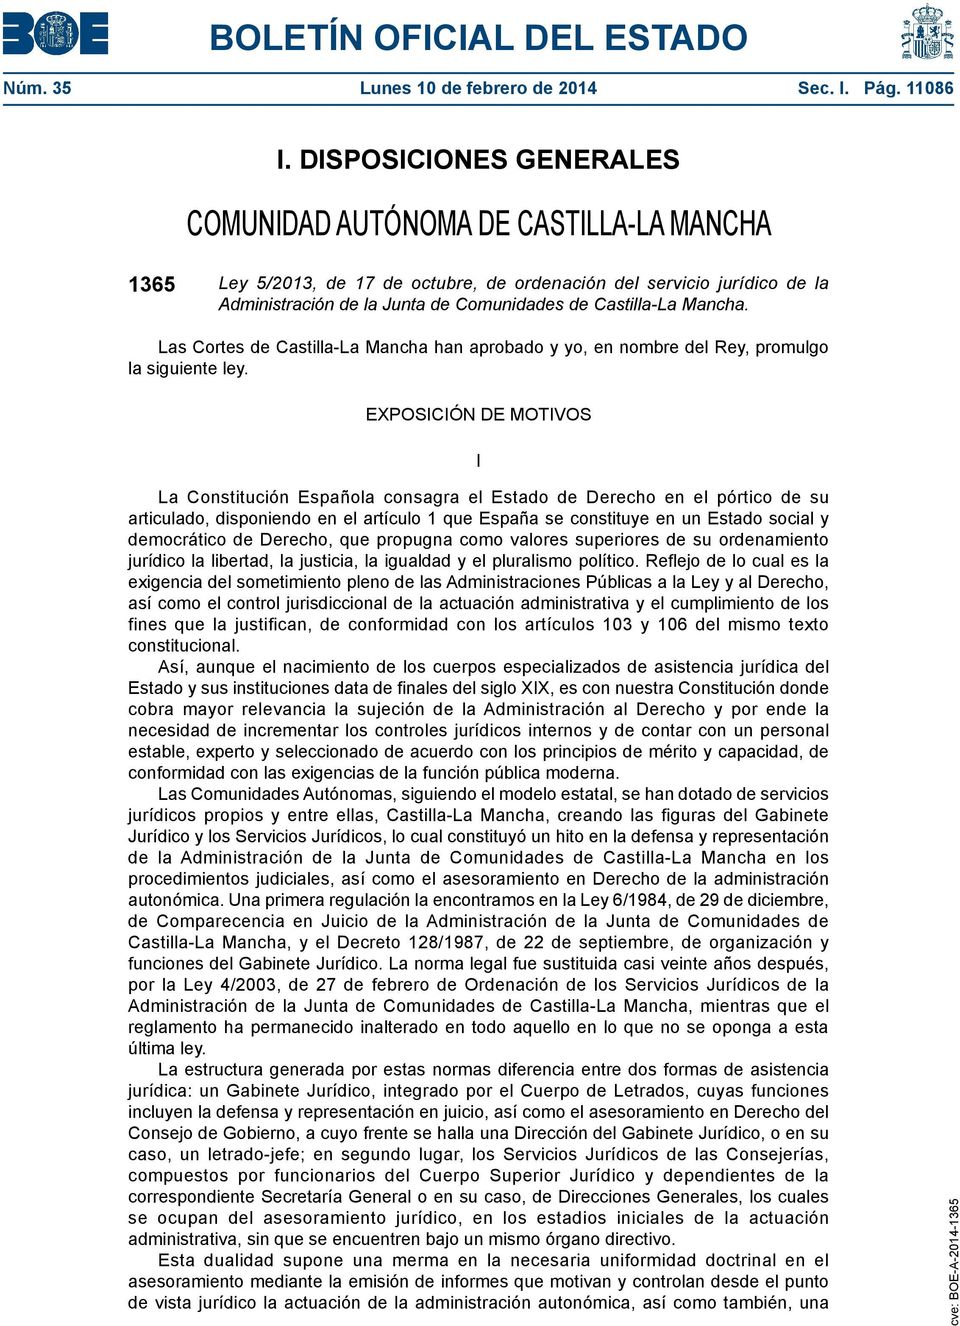 Mancha. Las Cortes de Castilla-La Mancha han aprobado y yo, en nombre del Rey, promulgo la siguiente ley.